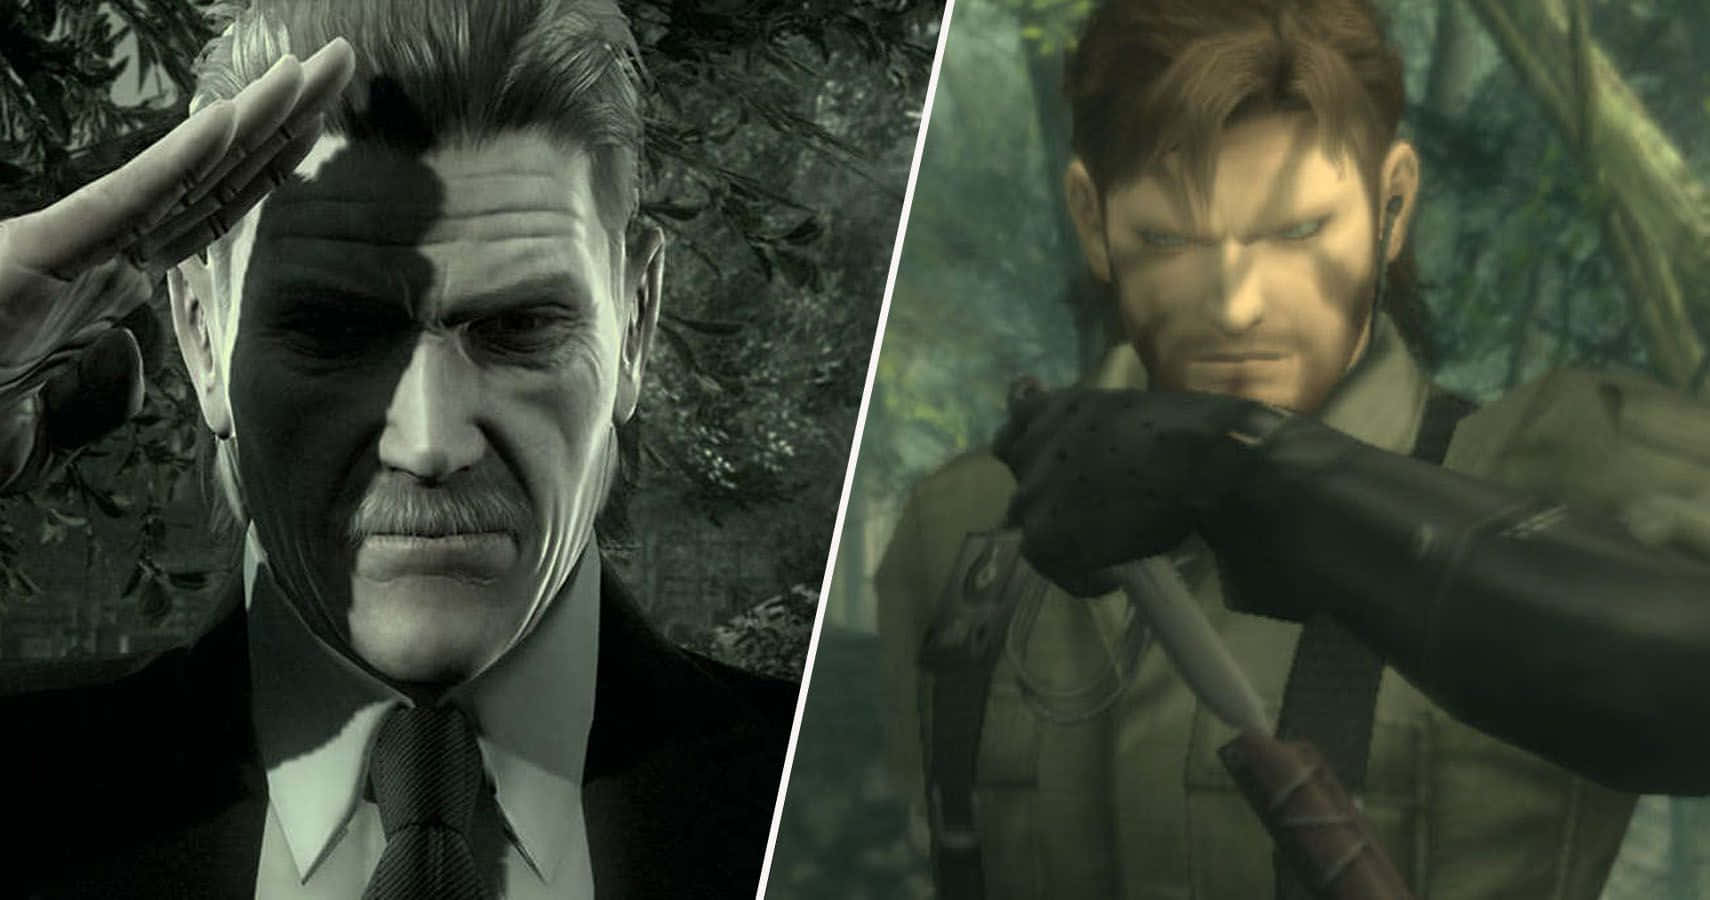 Personajesde Metal Gear Solid Reunidos Fondo de pantalla